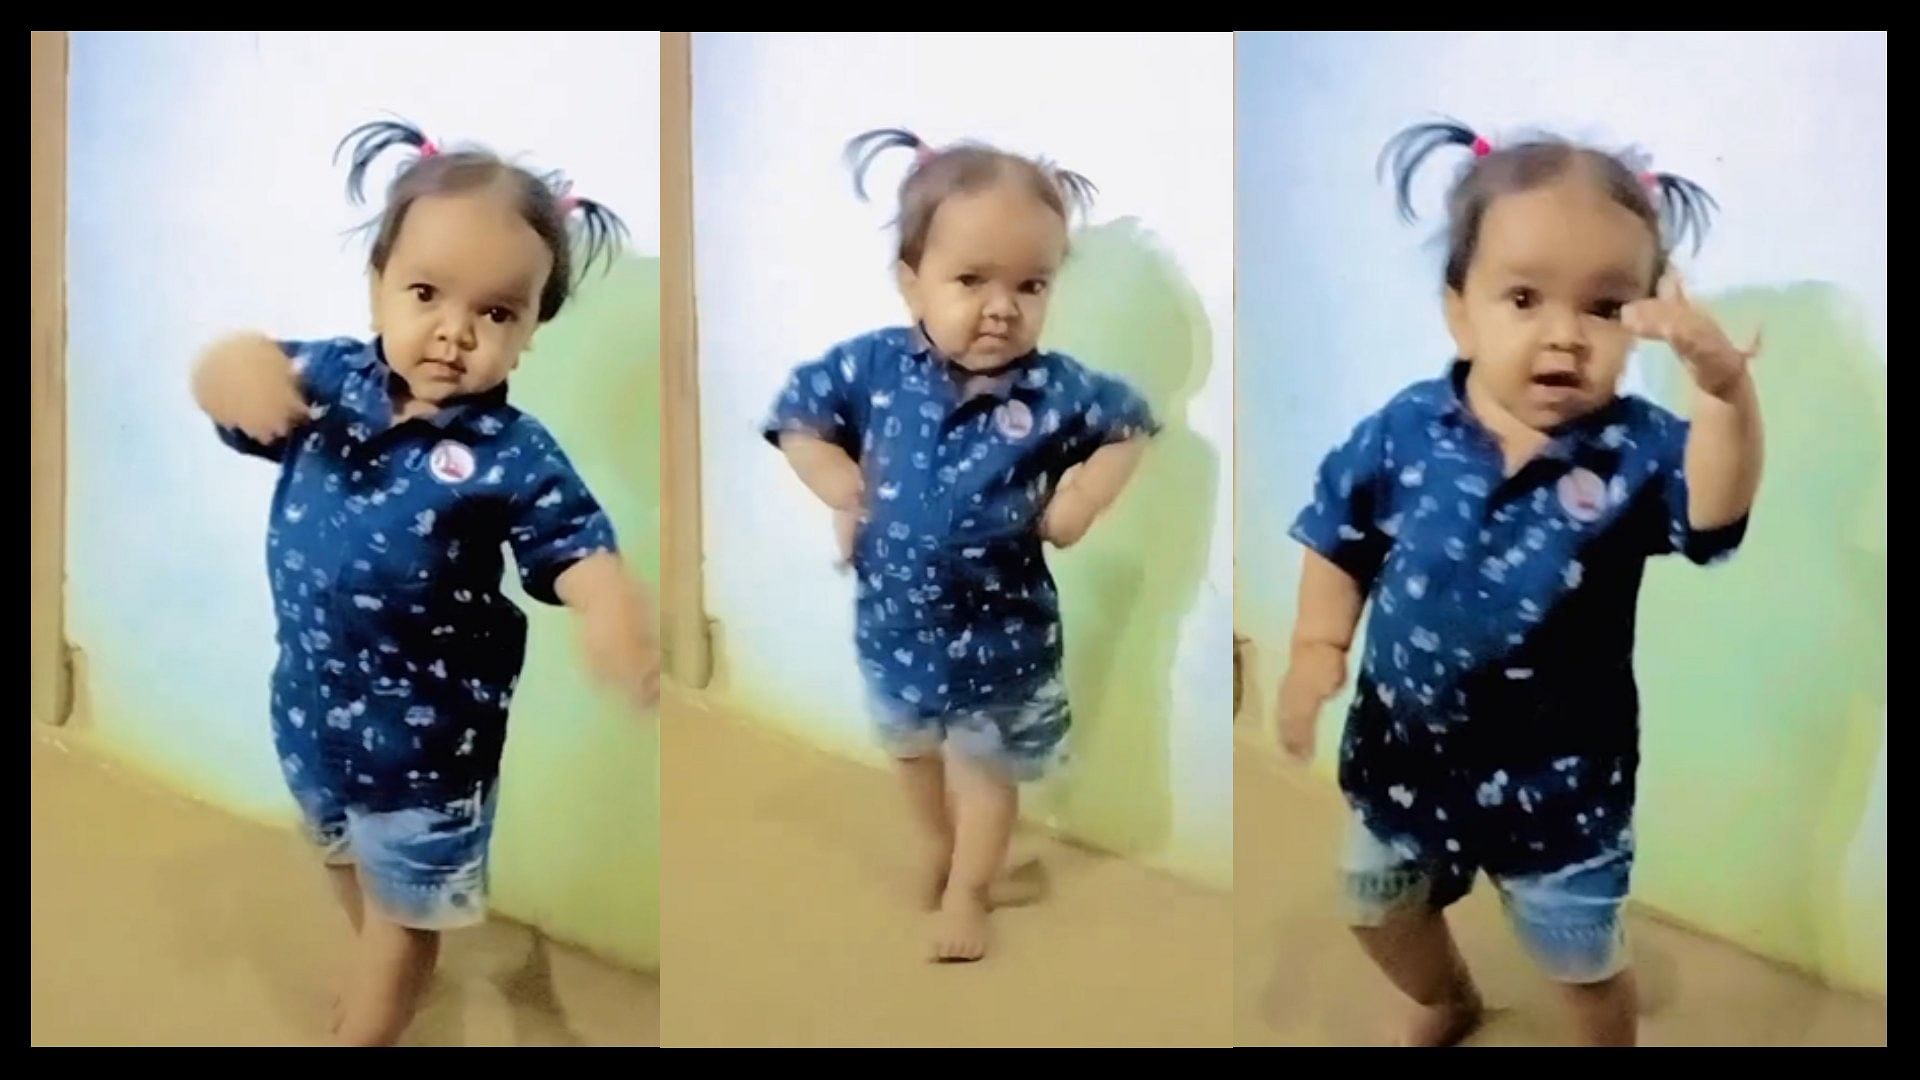 Little girl killer expressions dance on lata mangeshkar song goes viral on social media